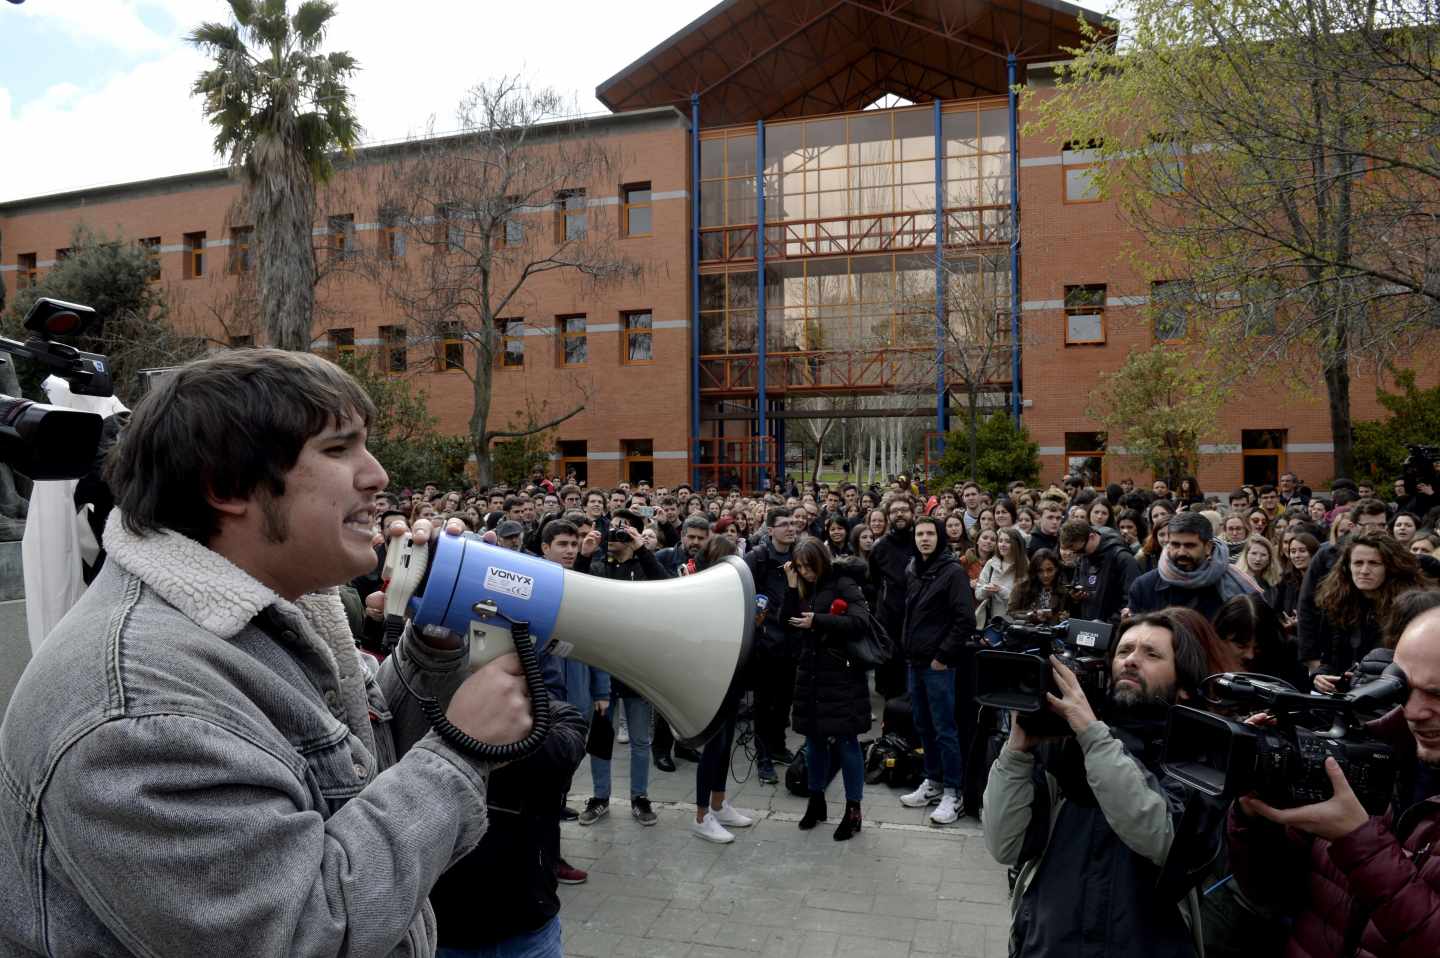 Un grupo de estudiantes protesta frente a la Rey Juan Carlos.